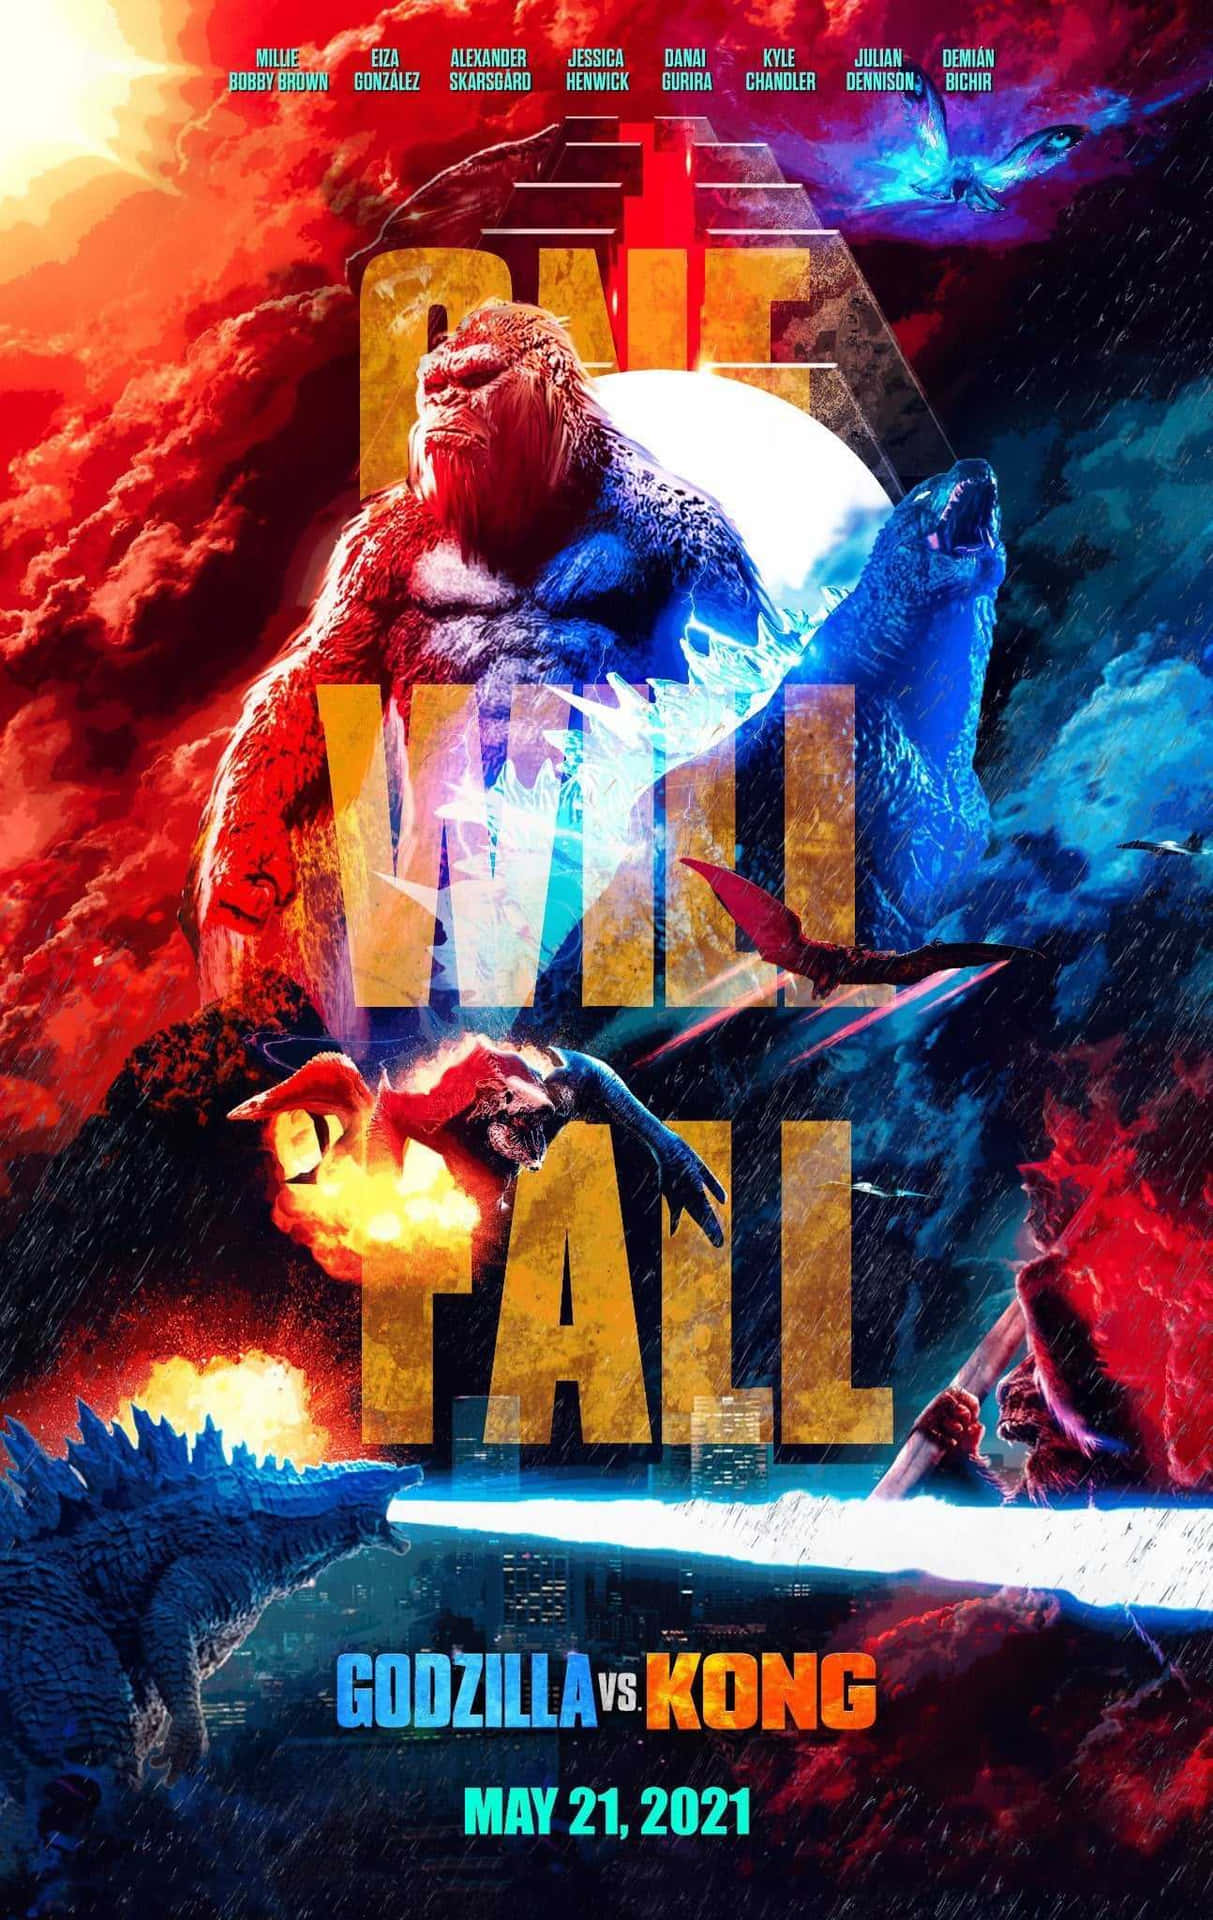 Titans Clash: Godzilla Vs Kong